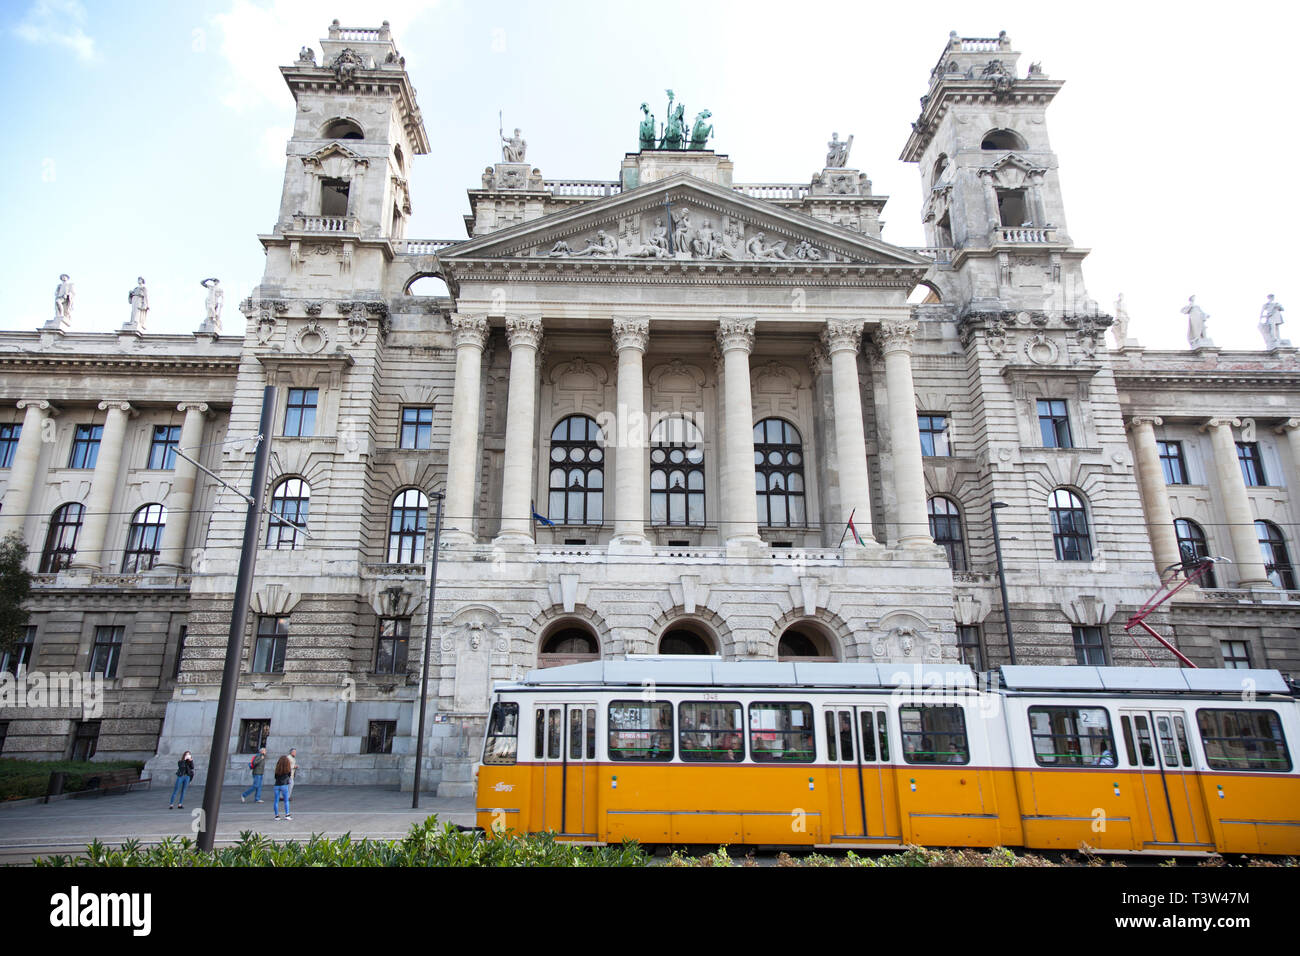 BUDAPEST, Ungarn - 22. SEPTEMBER 2017: Der Ethnographie Museum Gebäude gegenüber dem ungarischen Parlament, Budapest, Ungarn. Stockfoto